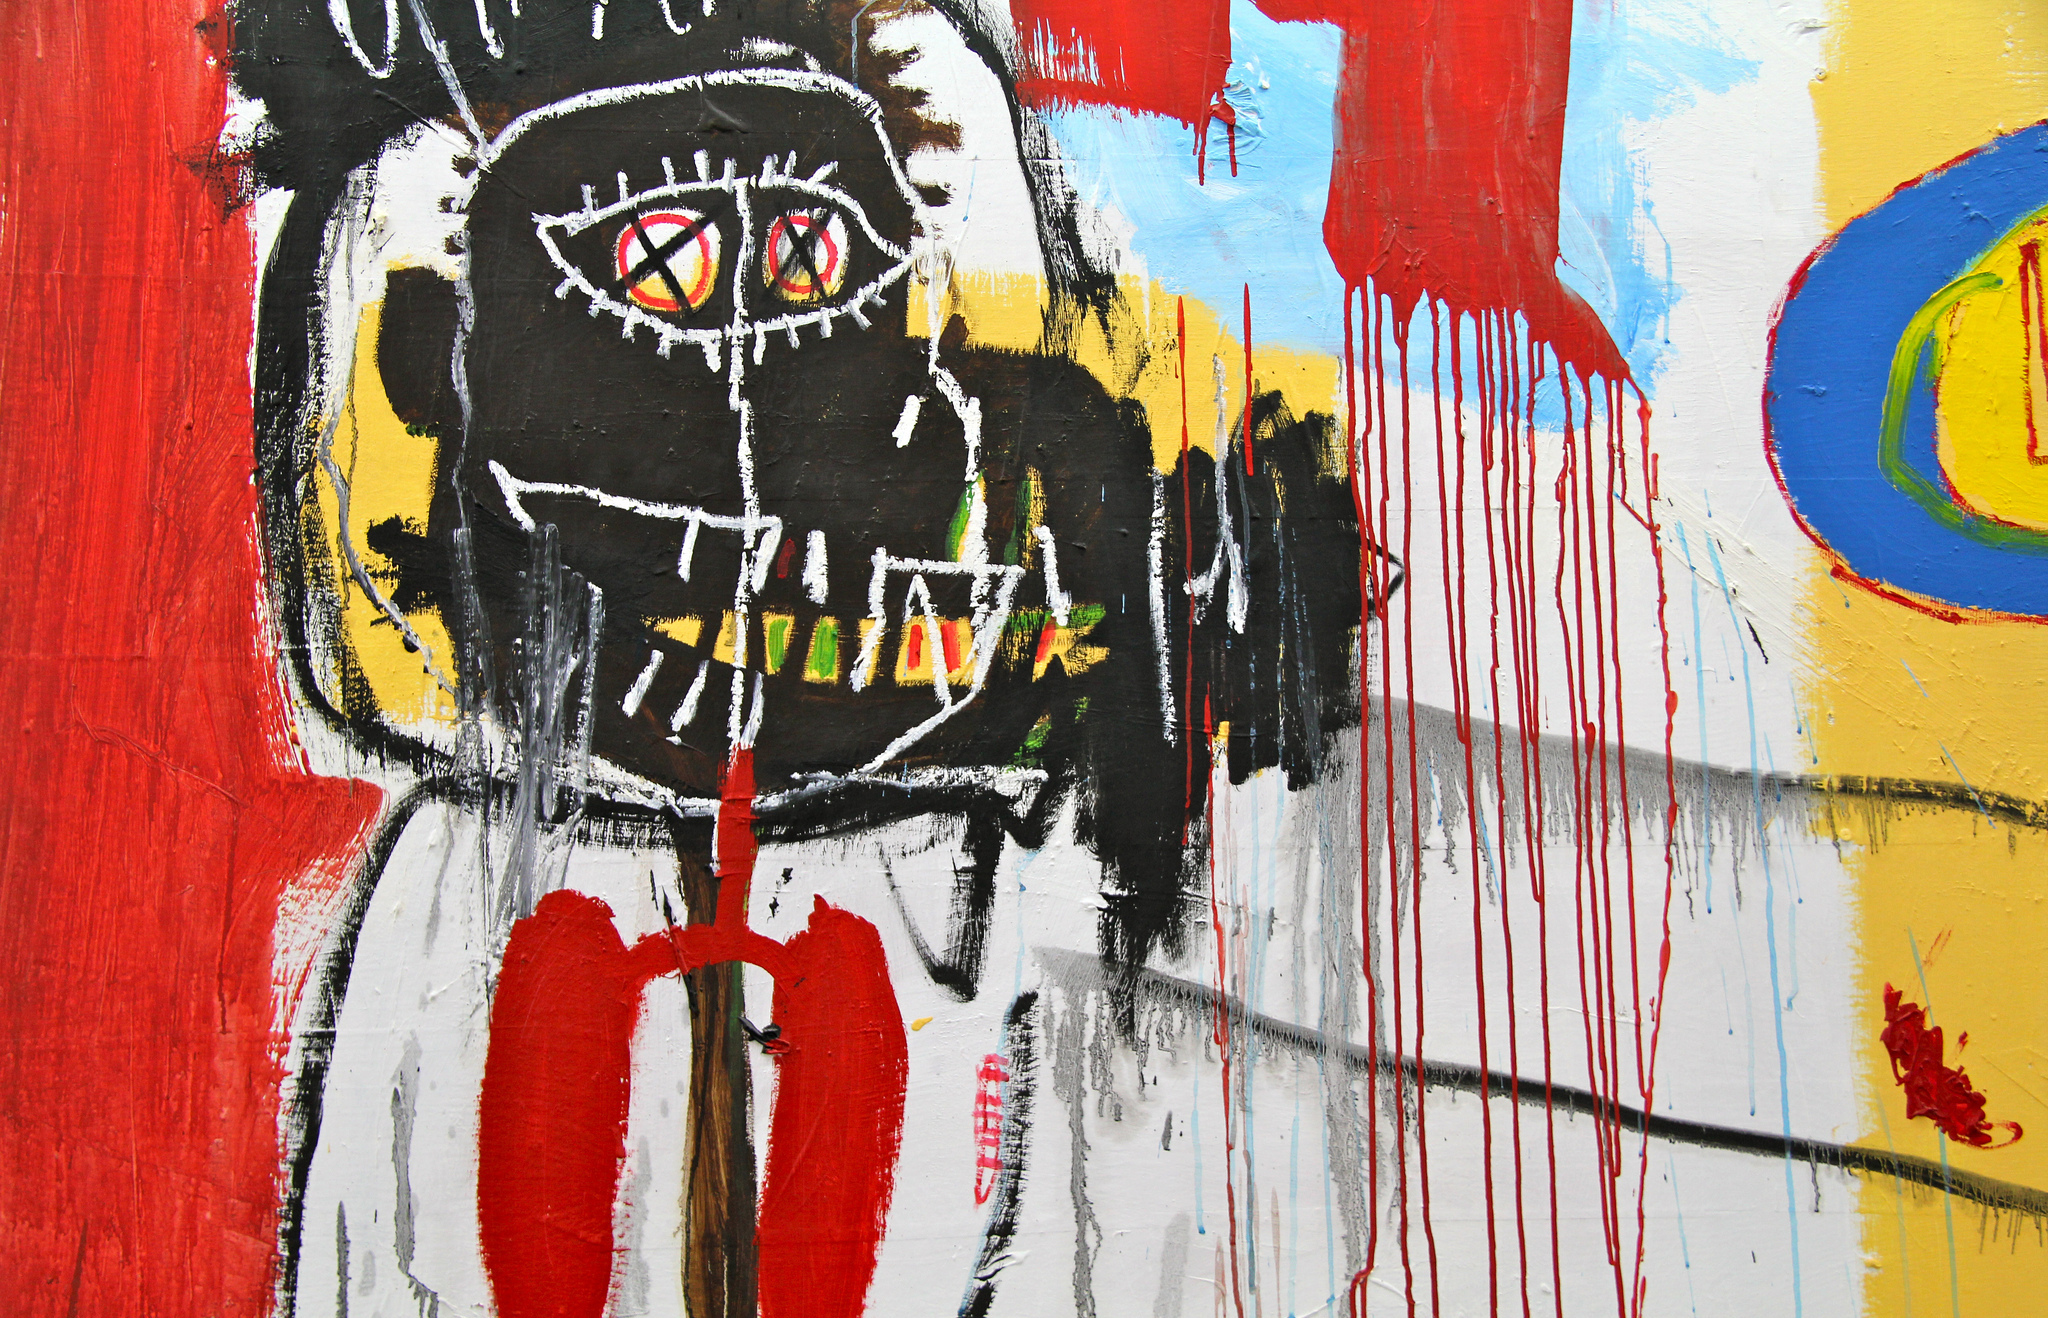 Jean-Michel Basquiat. Le Jour ni l’Heure, detail, 1988. Courtesy of Renaud Camus. 